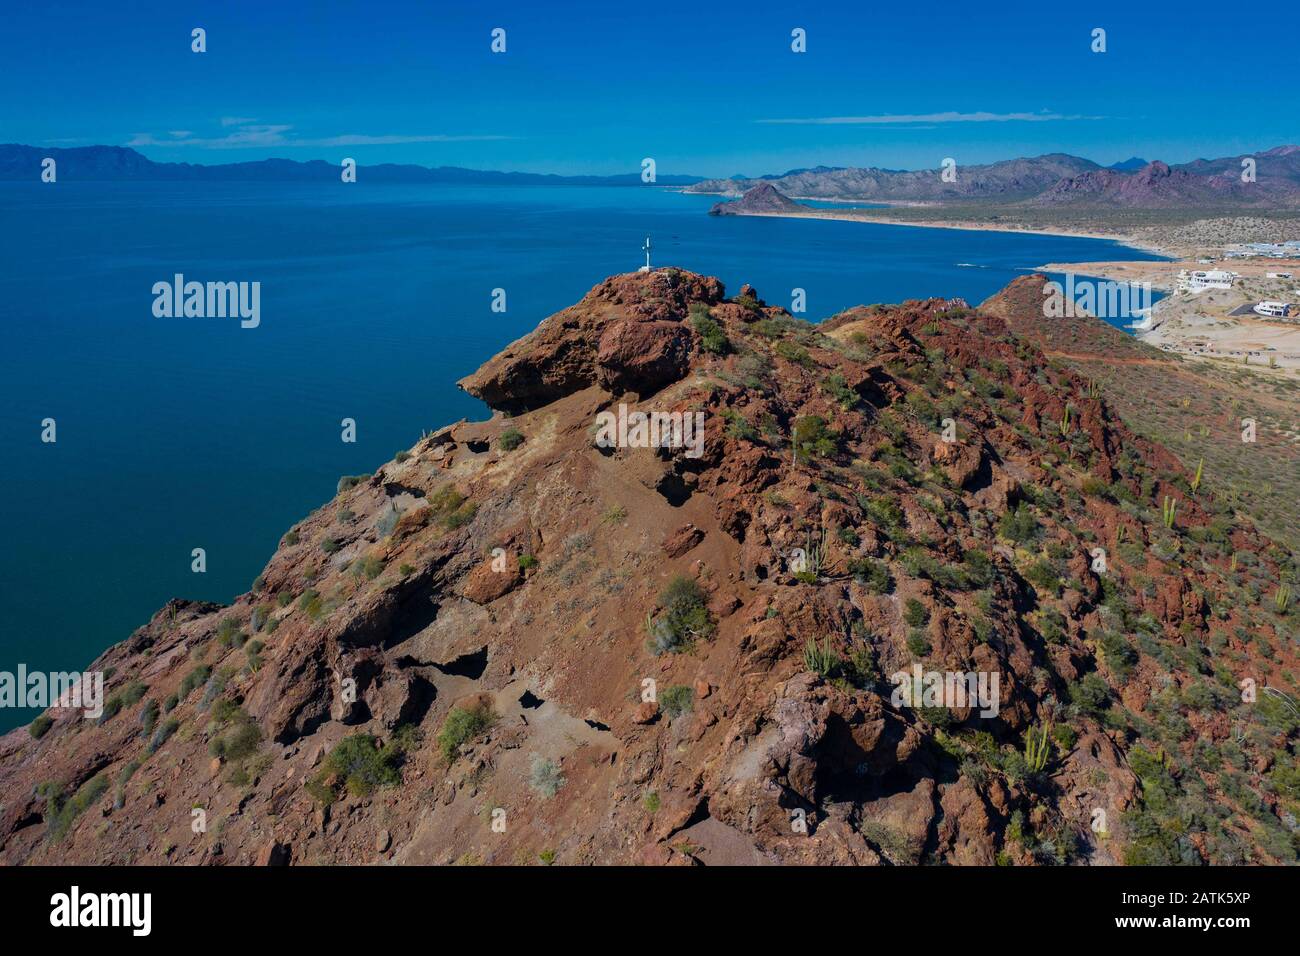 Vista aerea de Kino o bahía de Kino, Sonora, Mex en el golfo de california. playa kino, oceano pacifico, mar de Cortez mar, arena, playa, oceano, dest Stock Photo